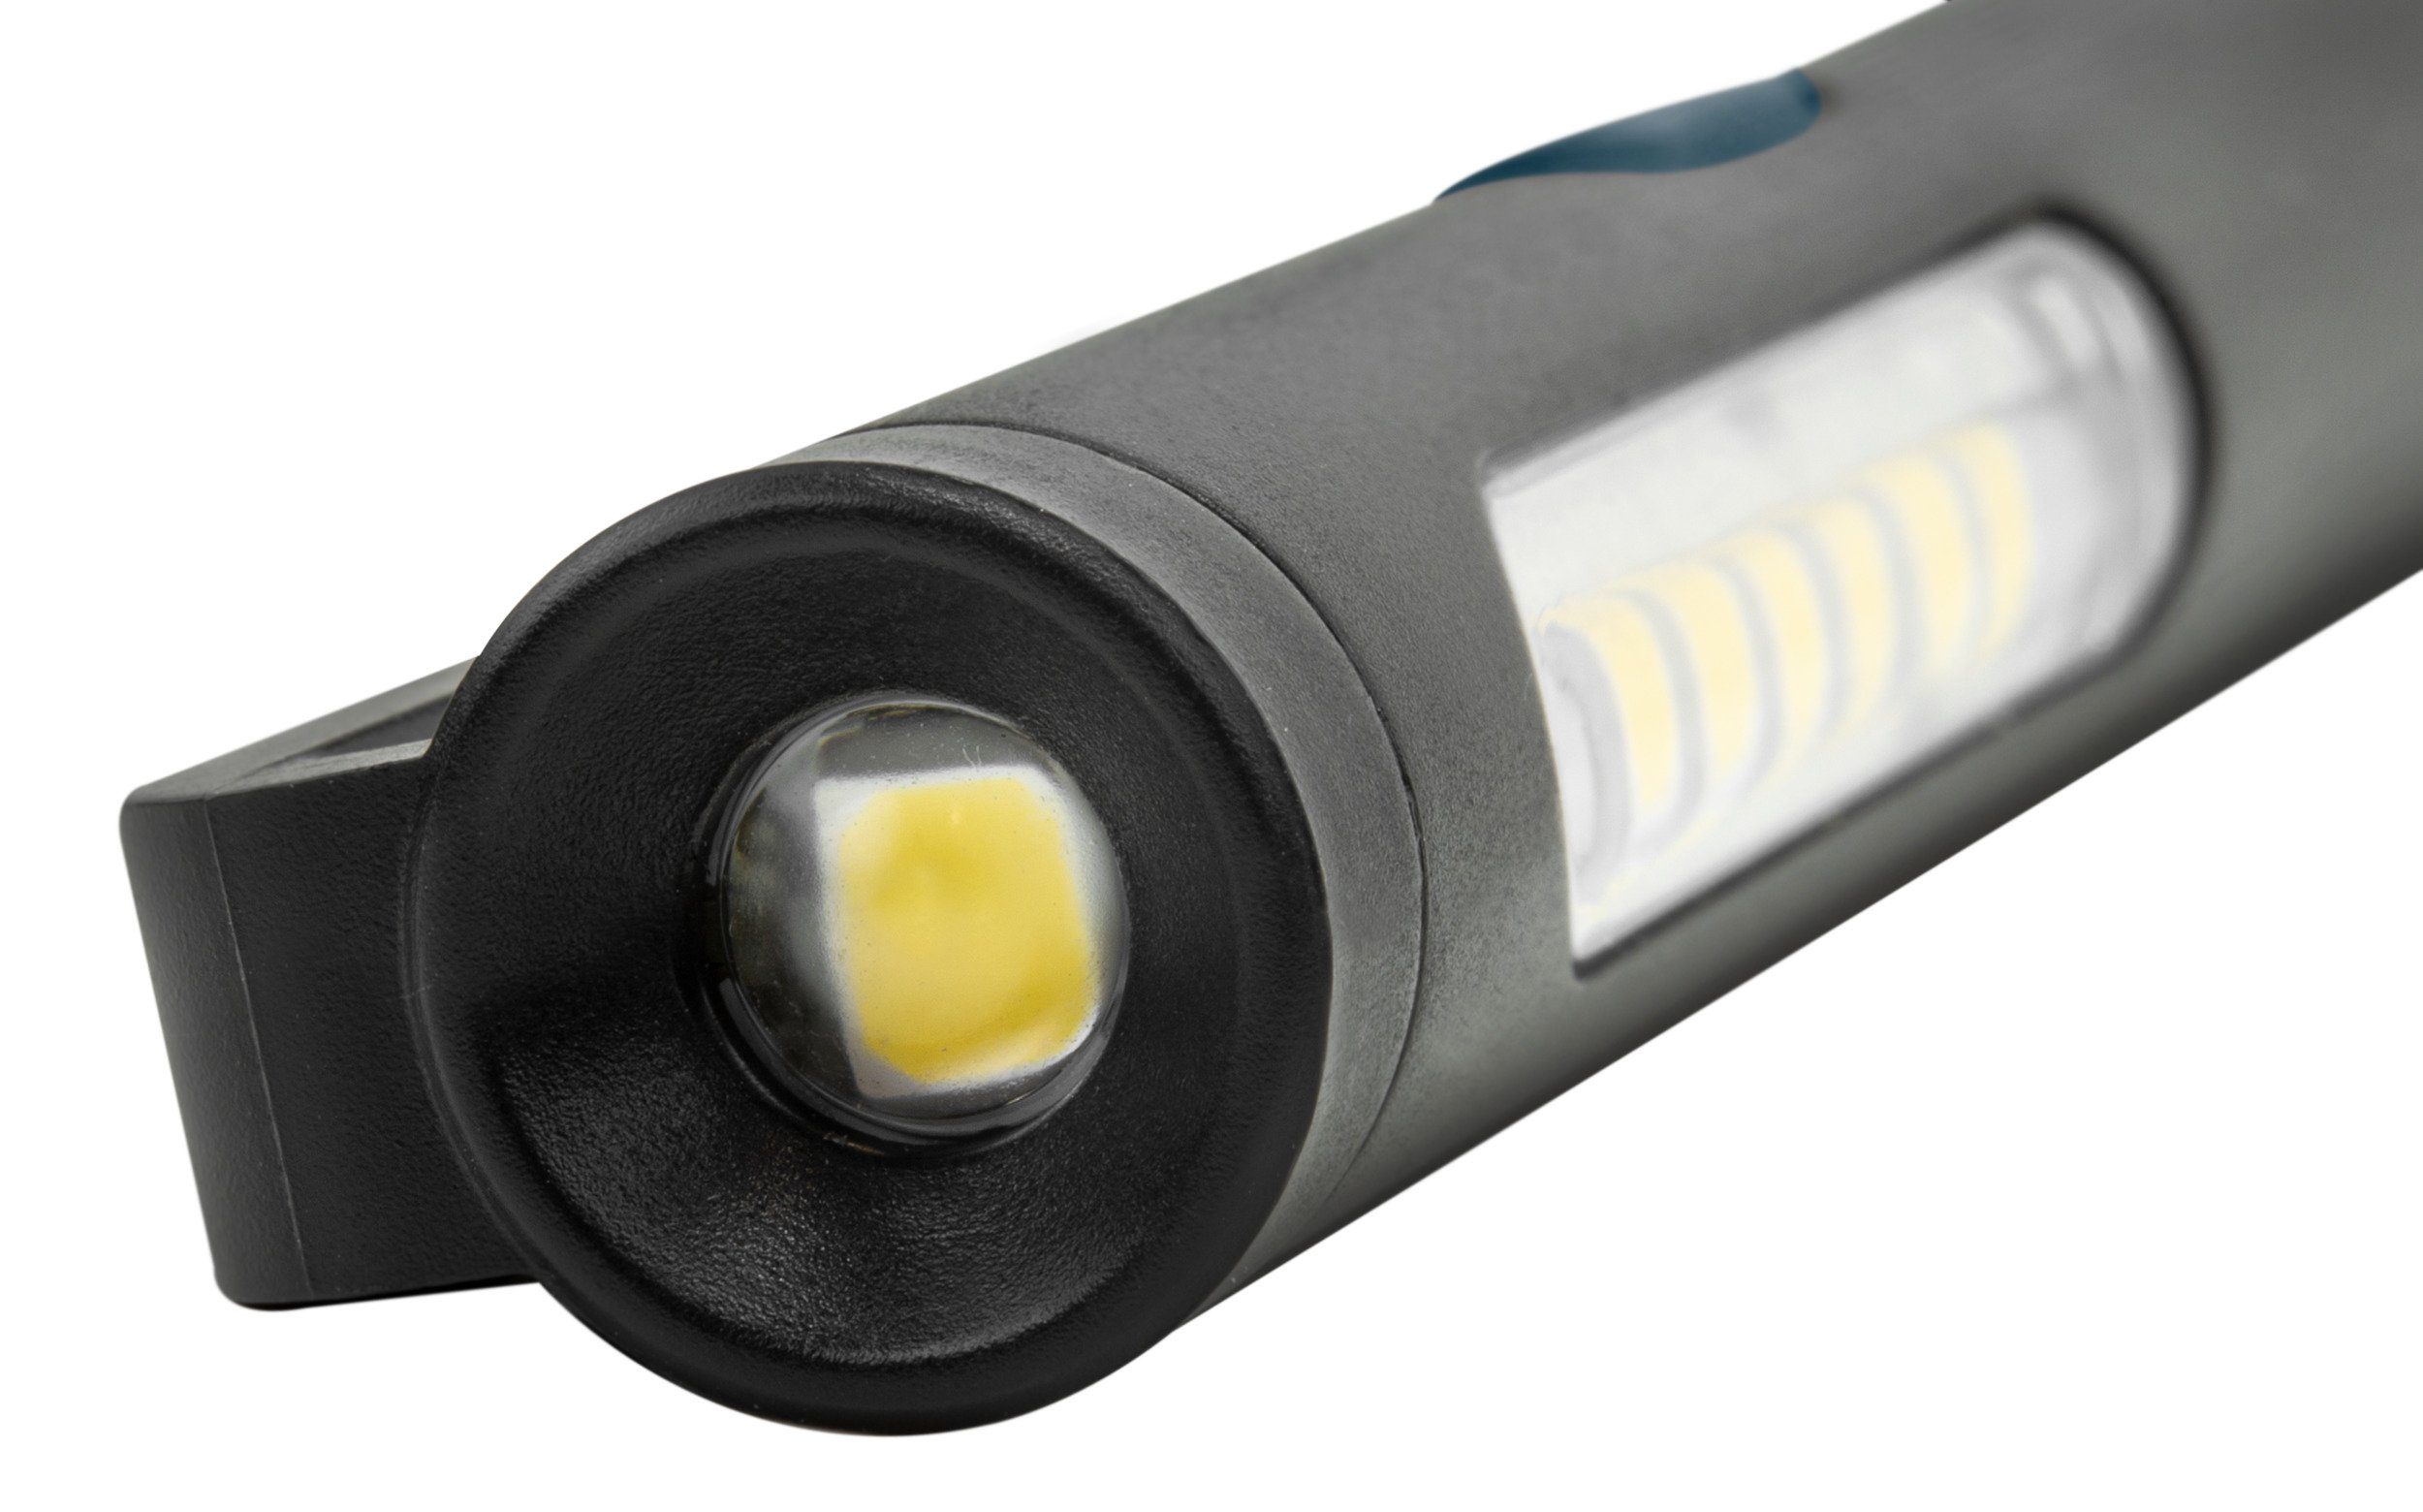 2x Mini LED Taschenlampe Superhelle Zoombar Taschenlampen Wasserdichte Handlampe